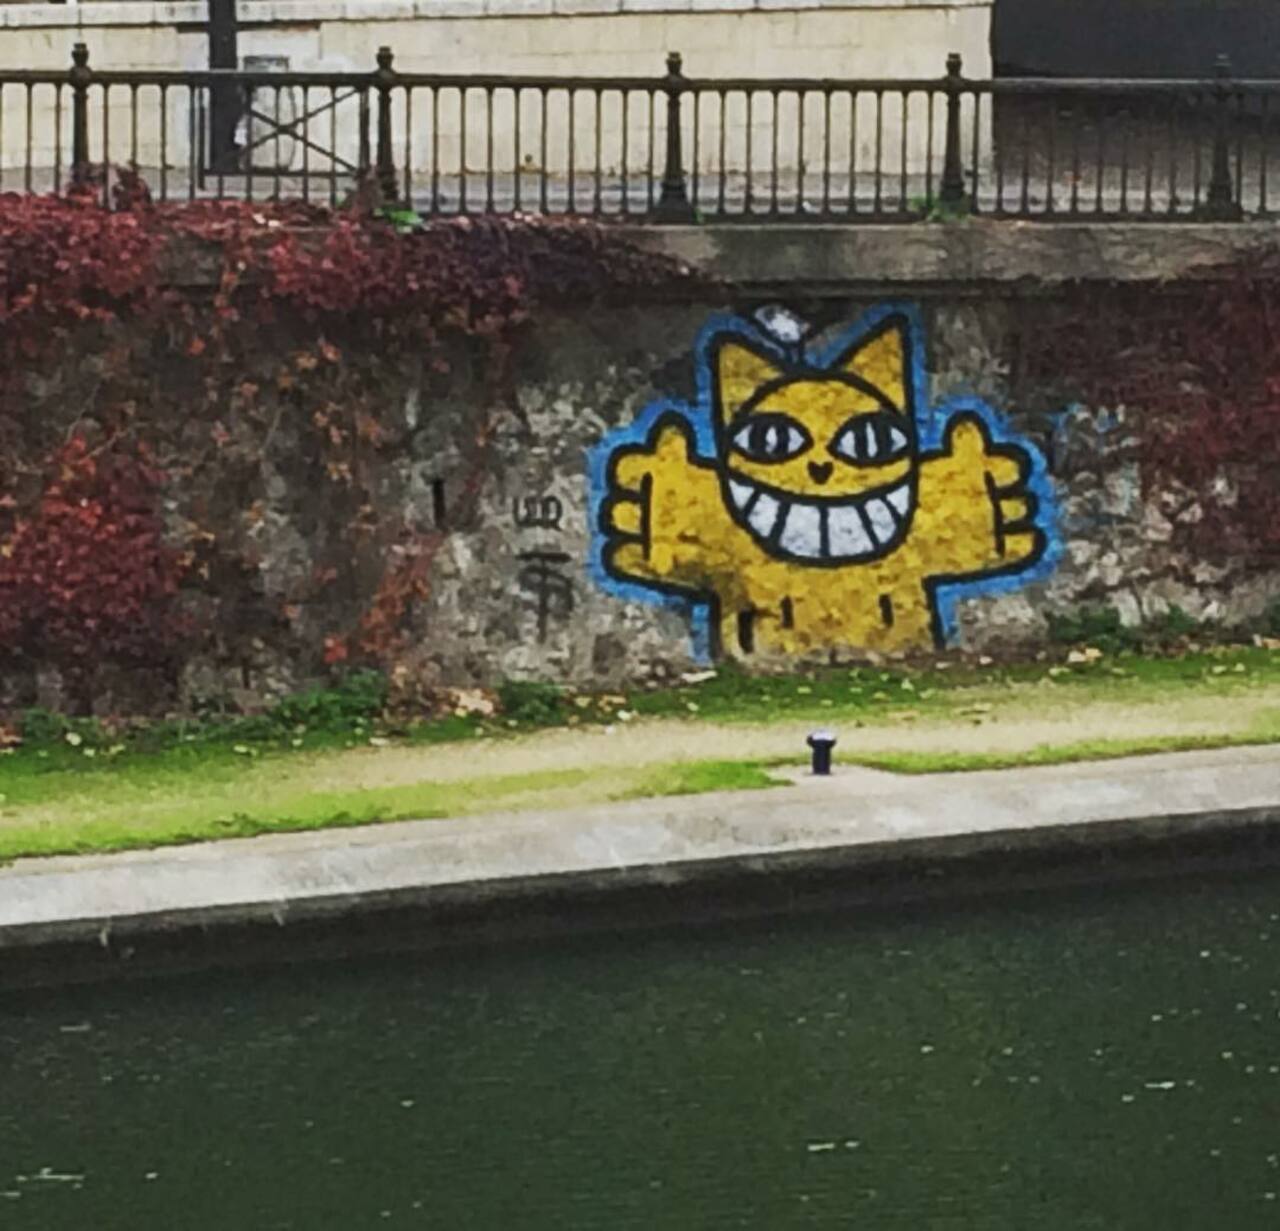 #Paris #graffiti photo by @allaboutparisandbeyond http://ift.tt/1OQVPSs #StreetArt https://t.co/Chr4hHSRNF